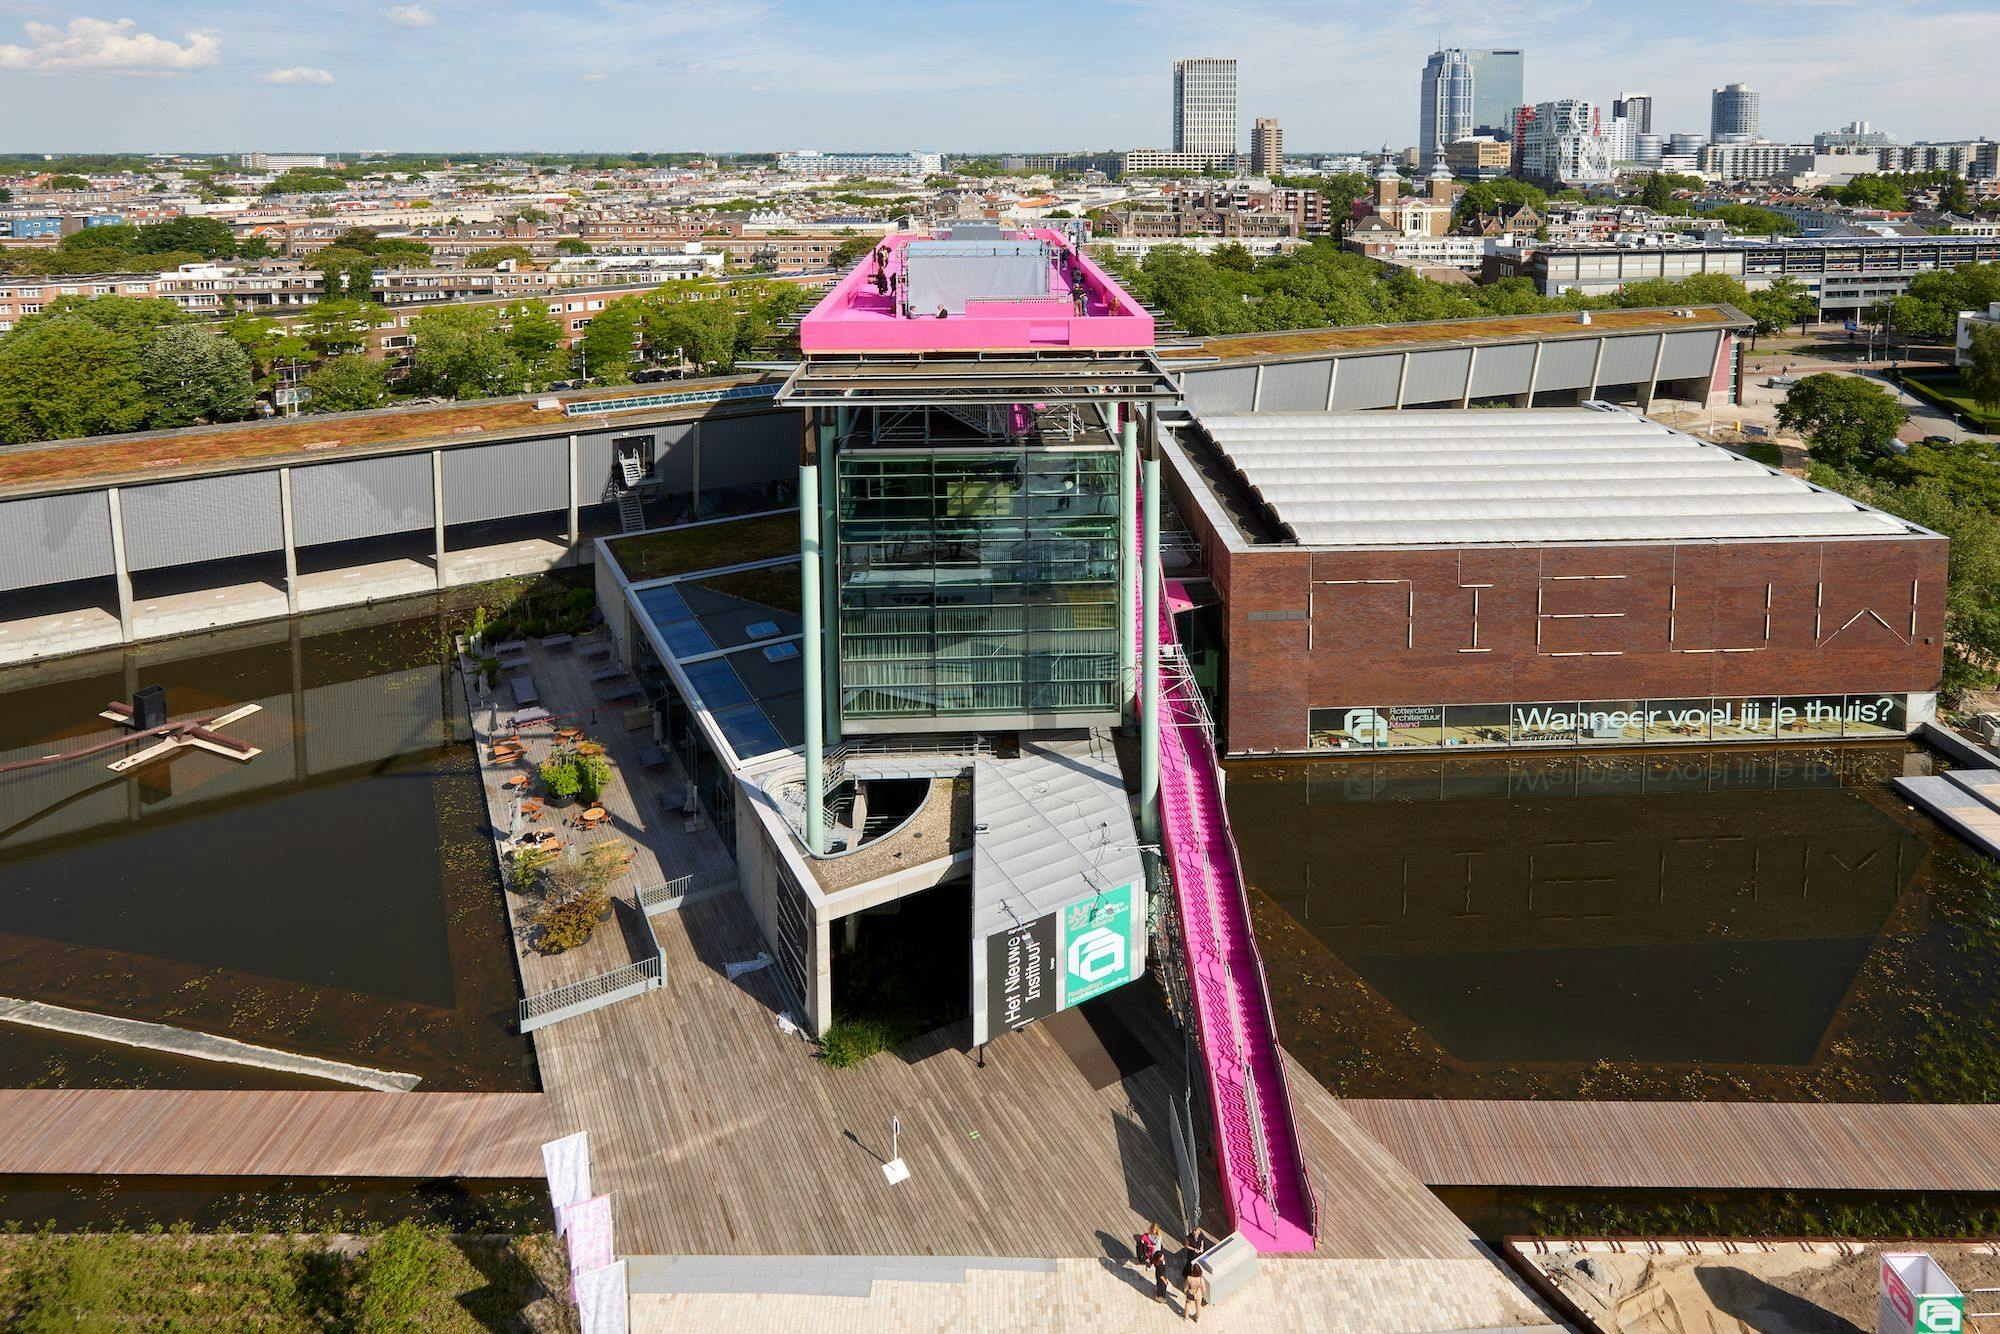 The Podium on the roof of Het Nieuwe Instituut. Photo: Aad Hoogendoorn